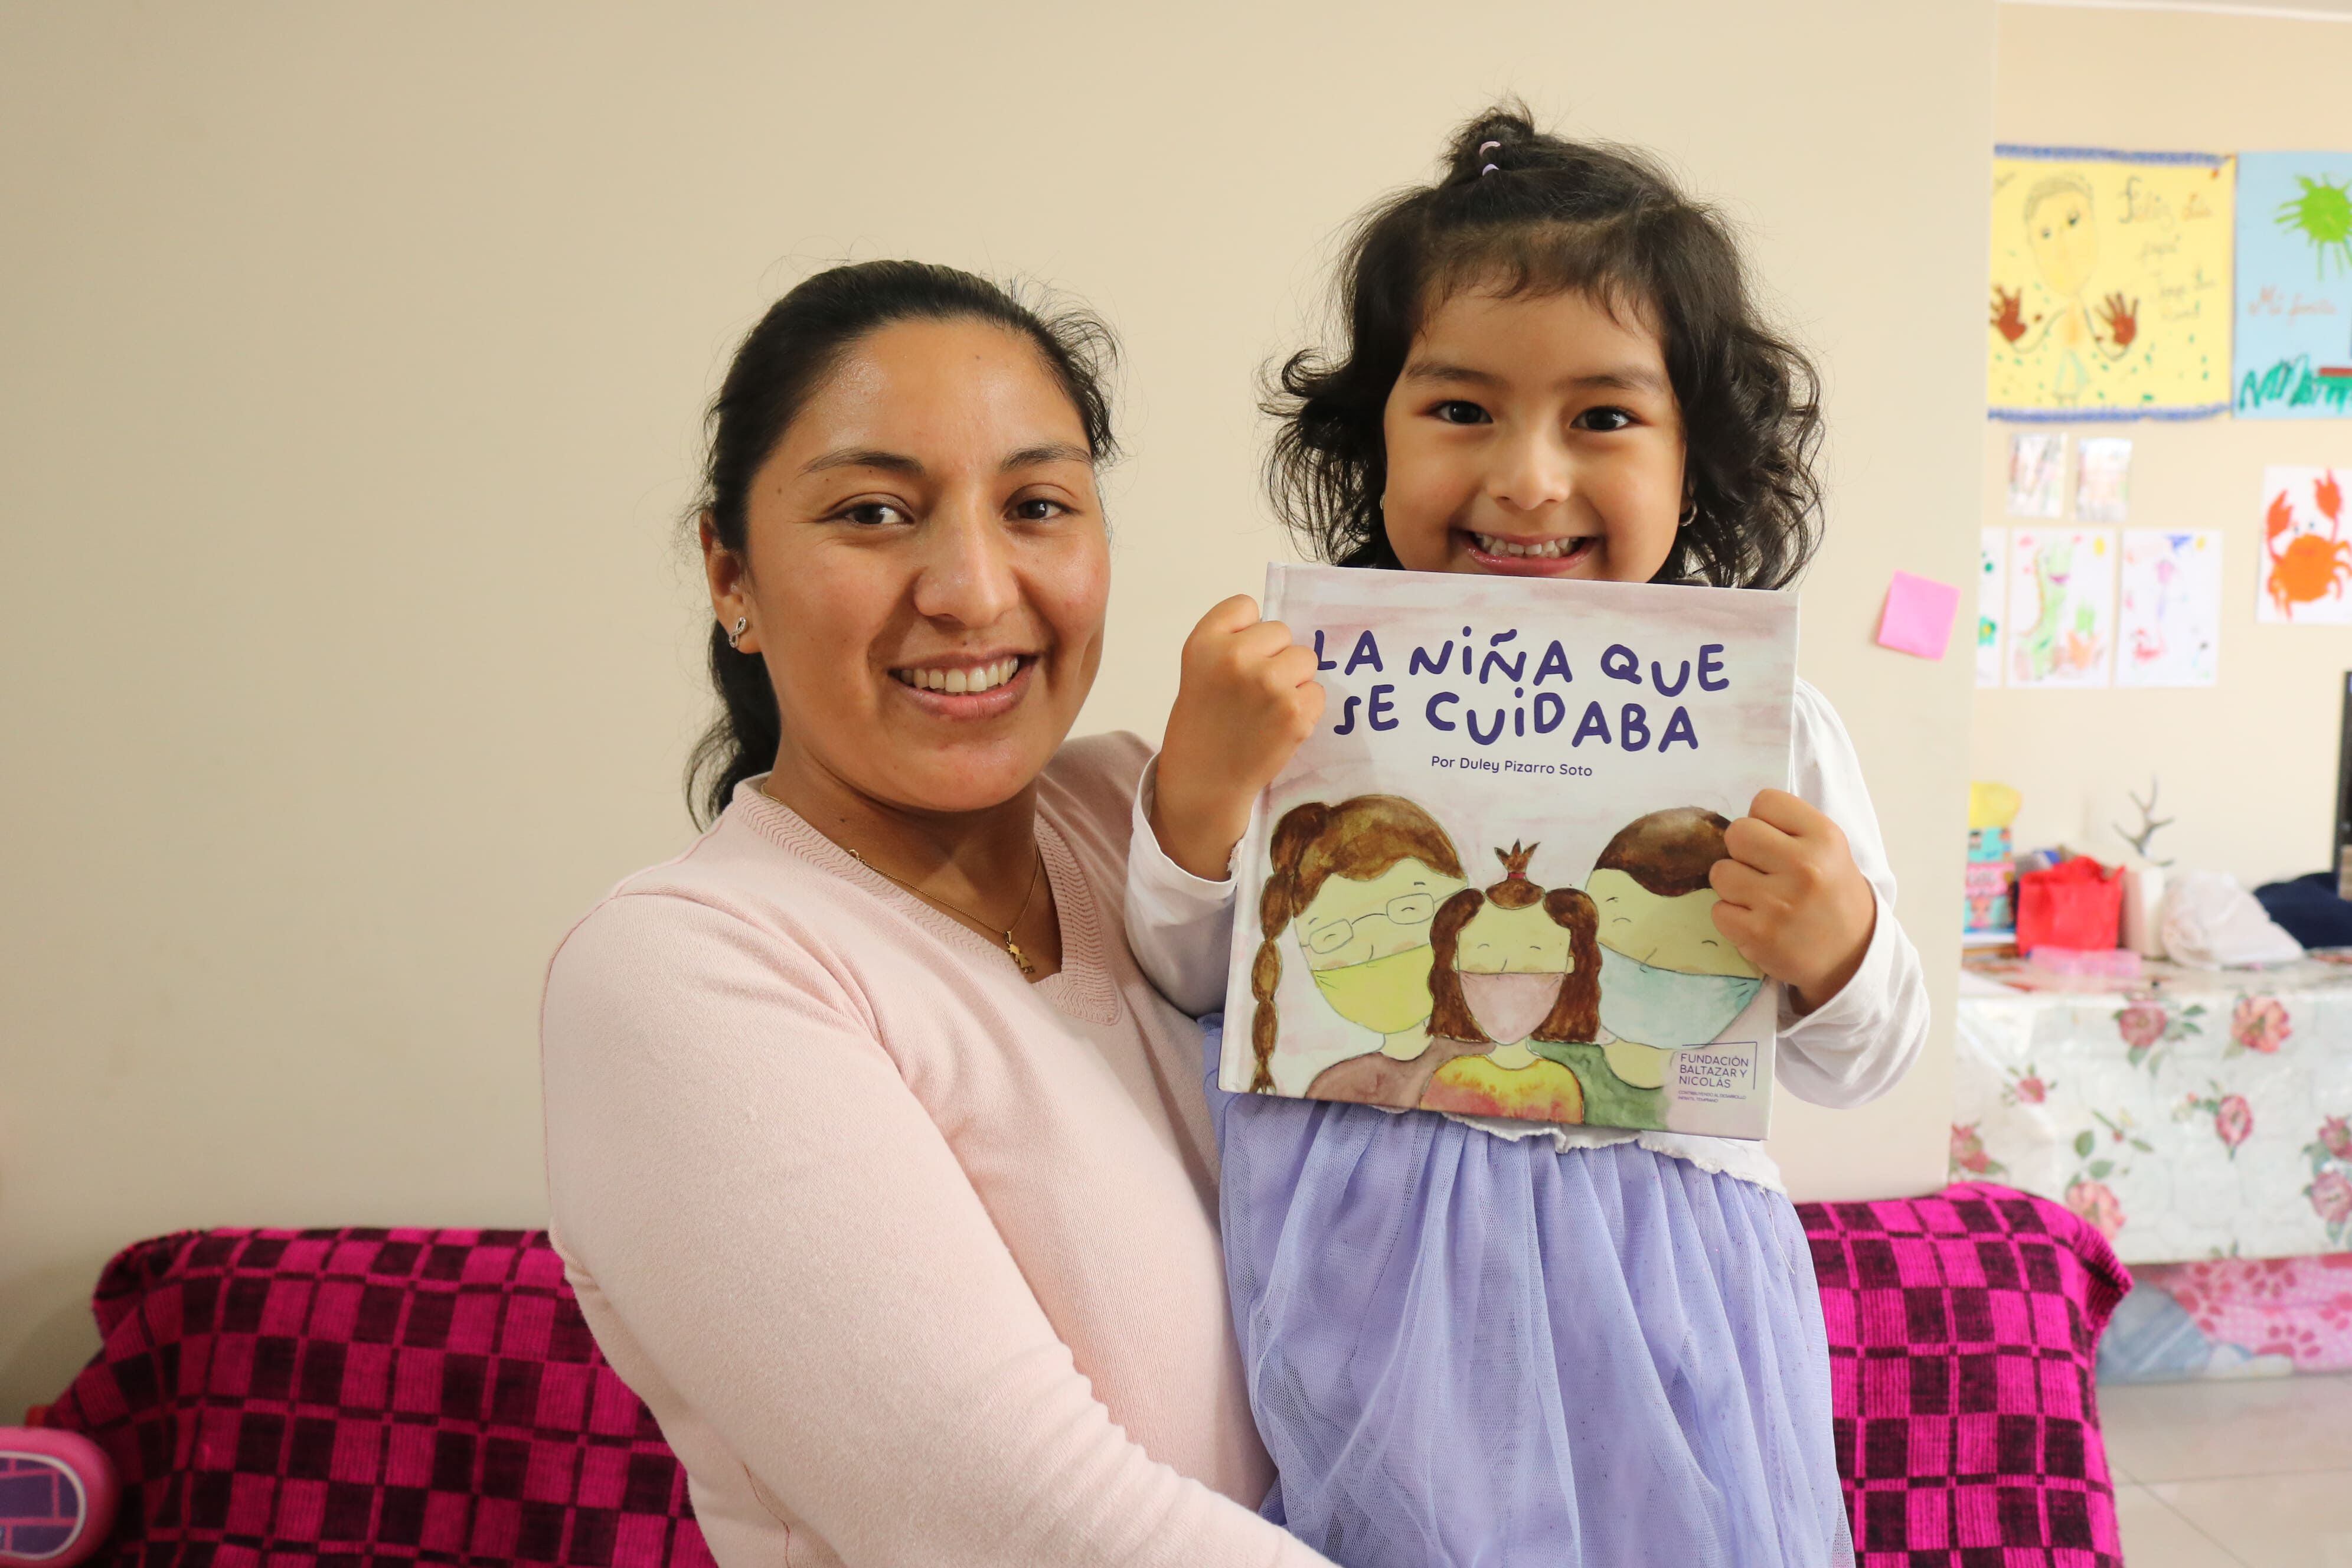 Los padres de familia deben estimular su aprendizaje a través de buenas prácticas como la lectura. (Foto: Fundación Baltazar y Nicolás )